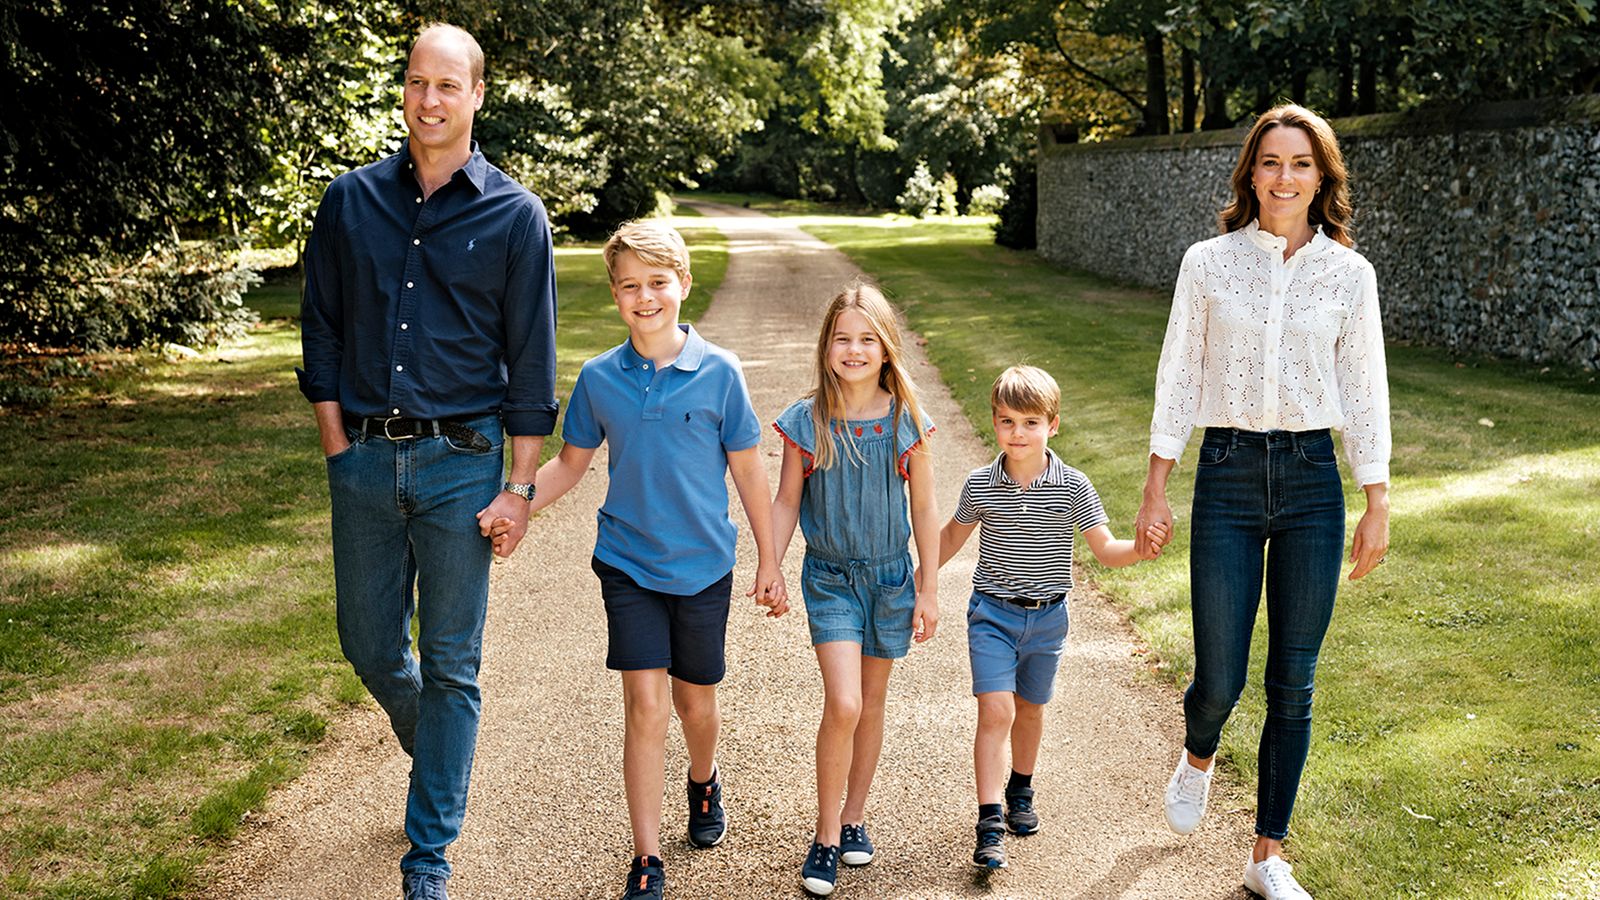 أمير وأميرة ويلز يطلقان صورة عائلية مع جورج وشارلوت ولويس لبطاقة عيد الميلاد |  أخبار المملكة المتحدة